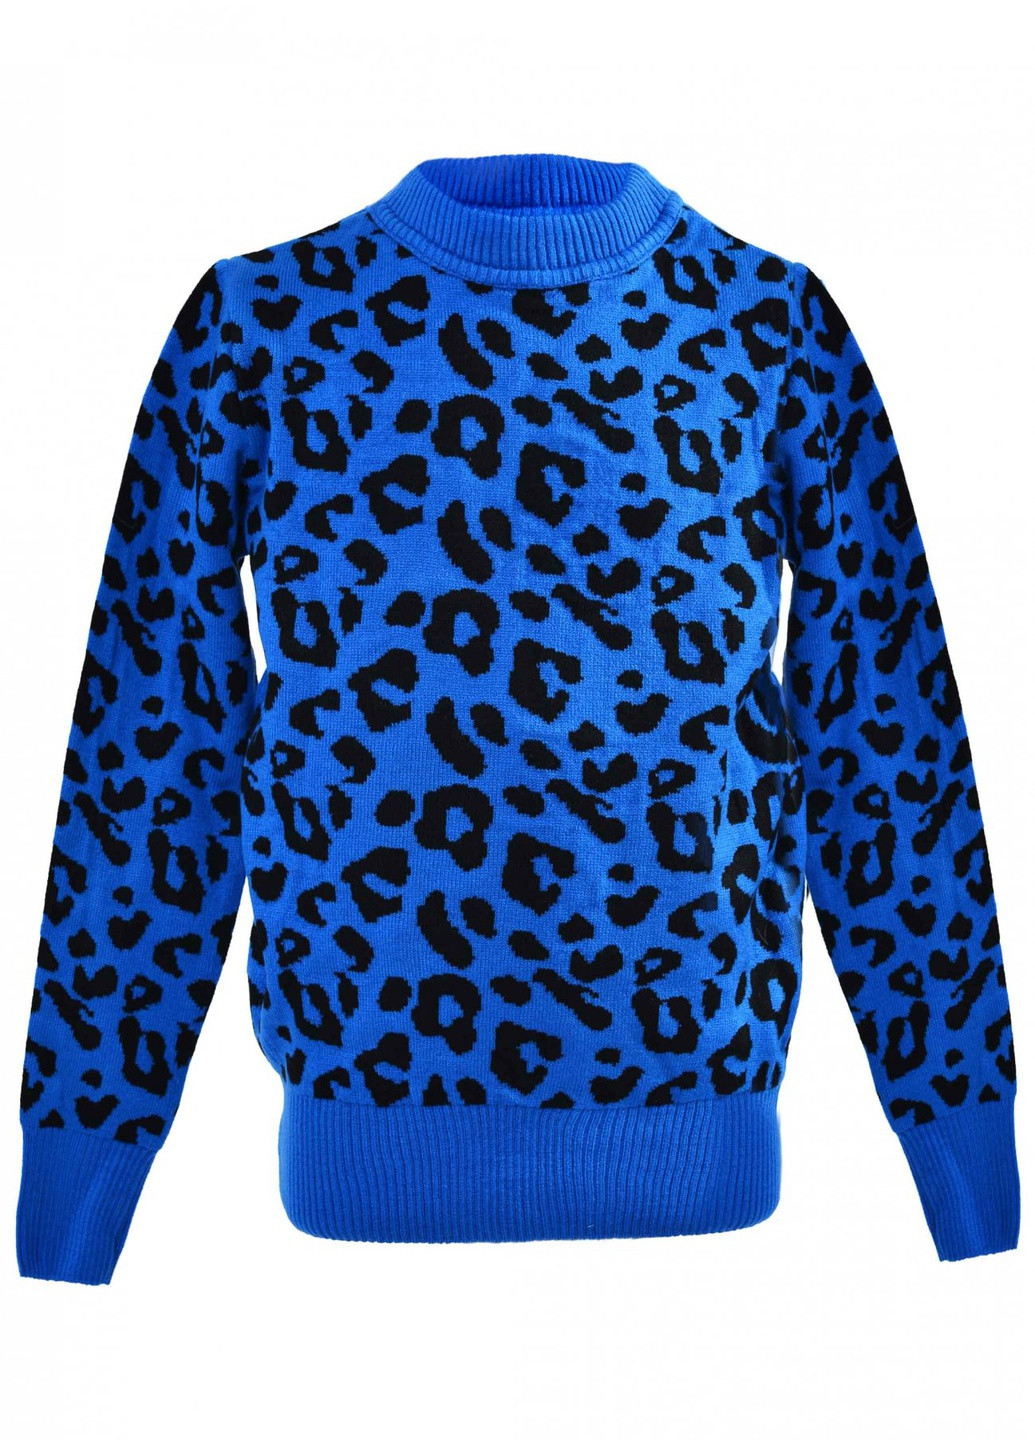 Синий светри светр леопард (леопард)17187-709 Lemanta